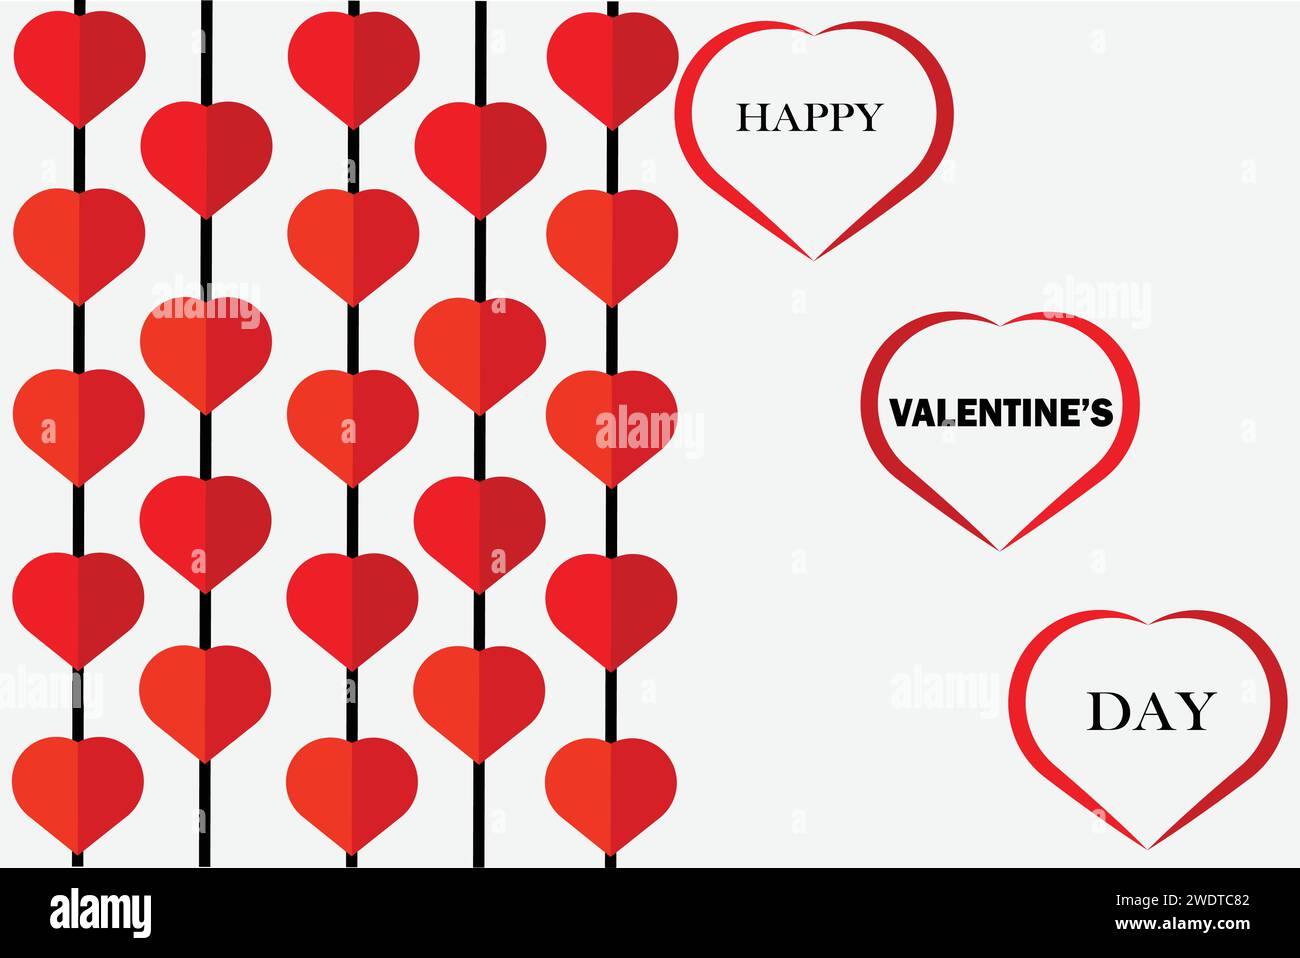 Happy valentinstag Typografie Vektor-Design mit geschnittenen roten Herzen Form auf weißem Hintergrund. Stock Vektor